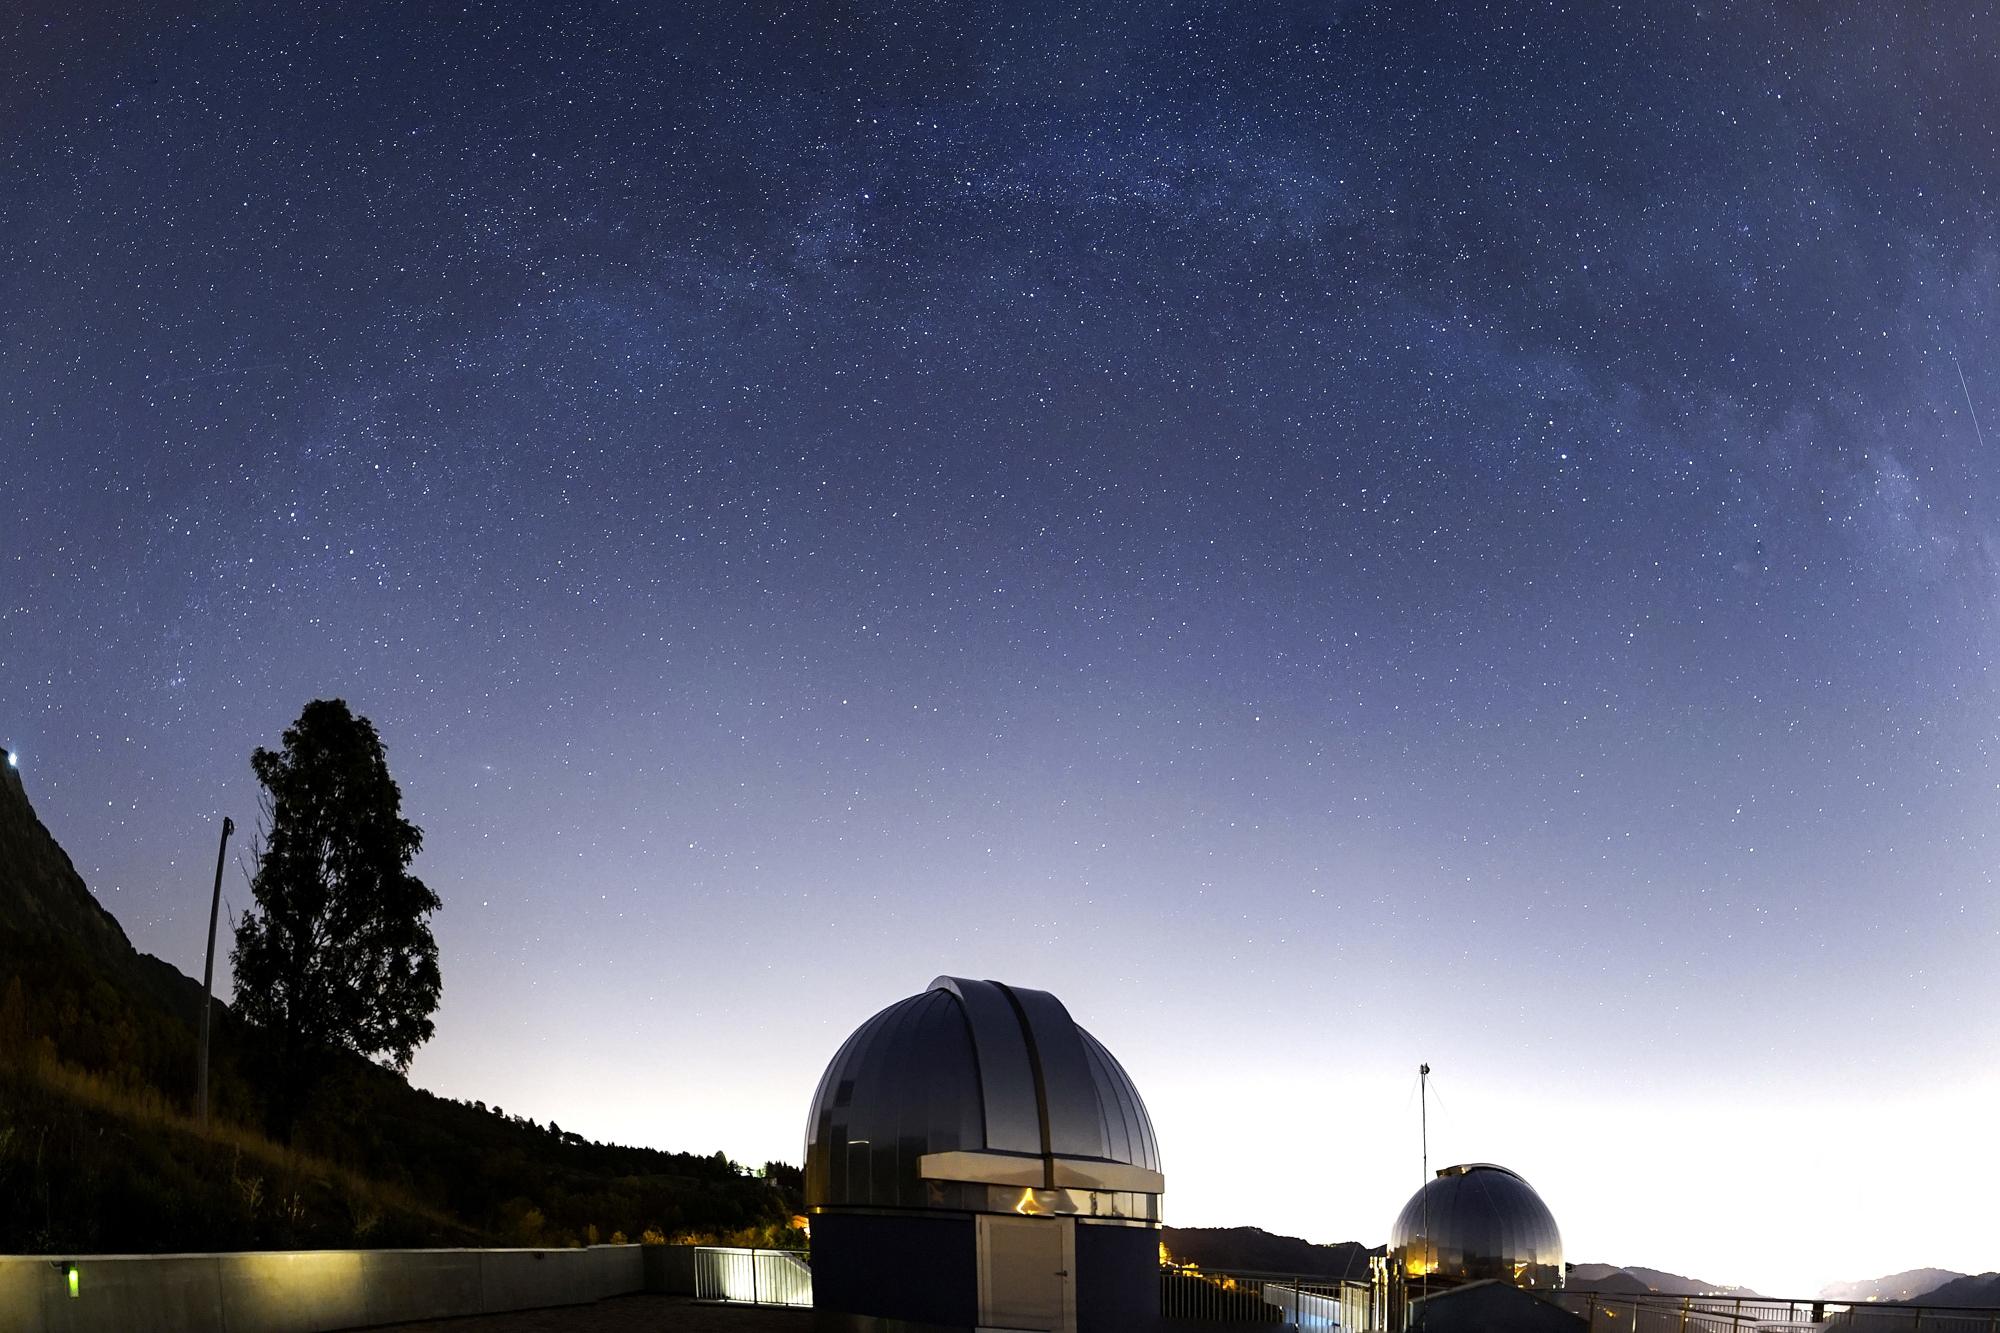 At the Marana Observatory...